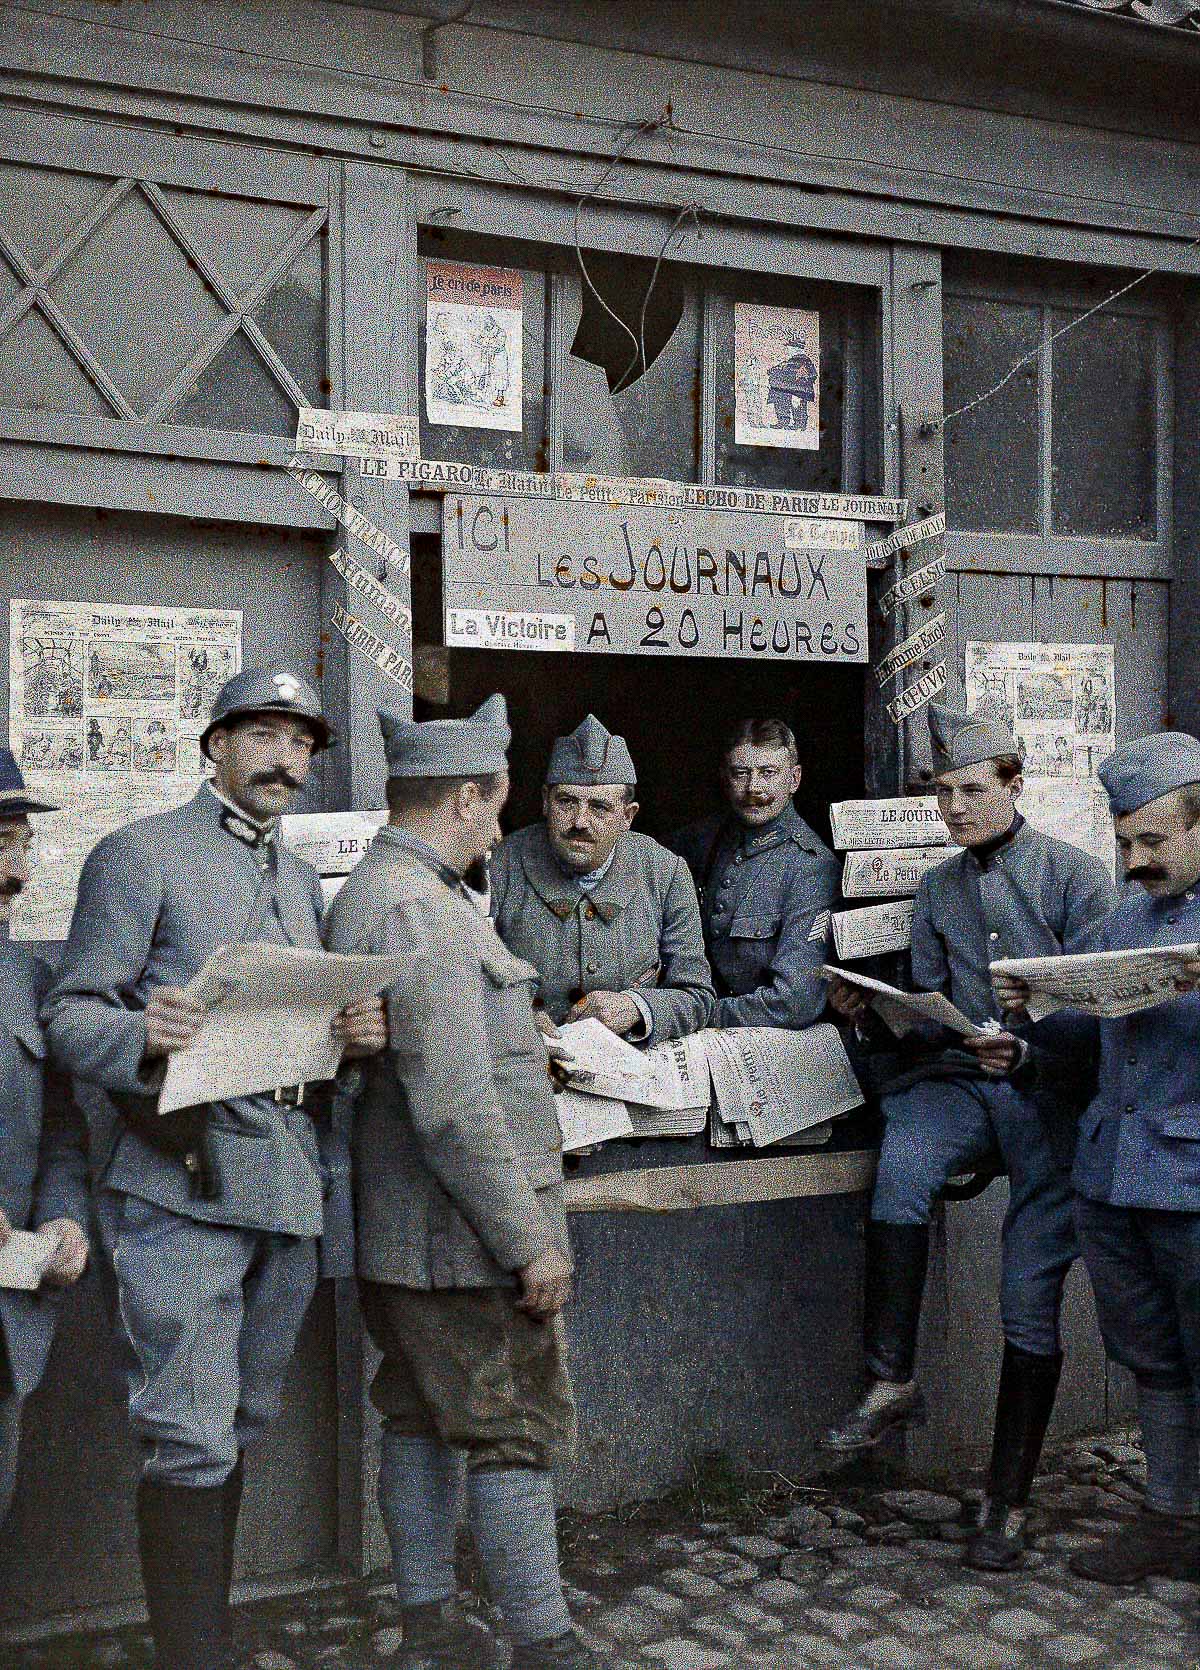 فرانسیسی فوجی کالائے کی ایک دکان پر اخبارات کا مطالعہ کرتے ہوئے، ستمبر 1917ء 